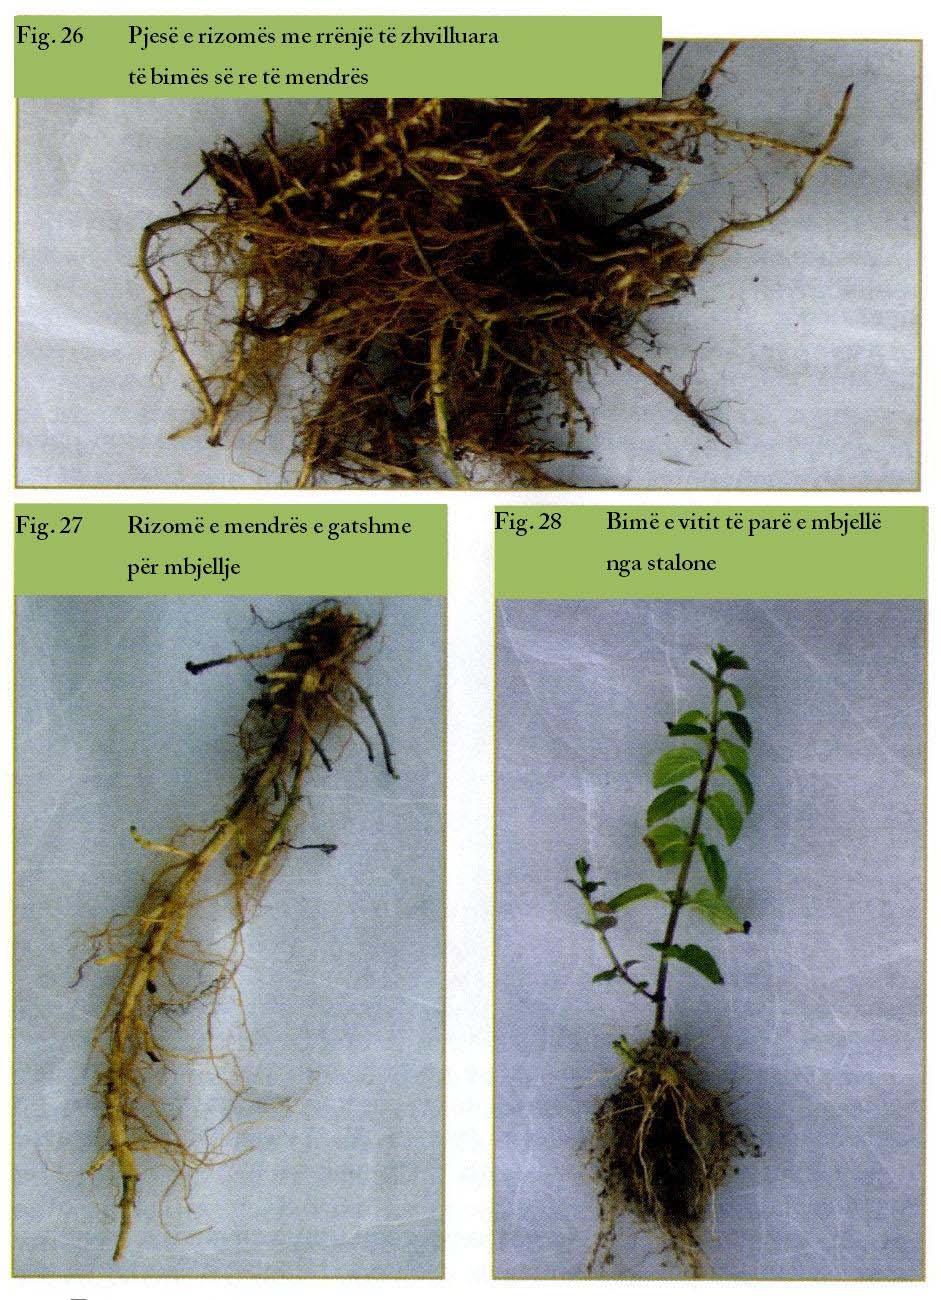 Faqe 36 në 65 Në kultivimin me fidanë farërat mbijnë uniformisht në vazhdimësi të 10-15 ditëve në kushte të kontrolluara të lagështirës, temperaturës, dritës, tokës.